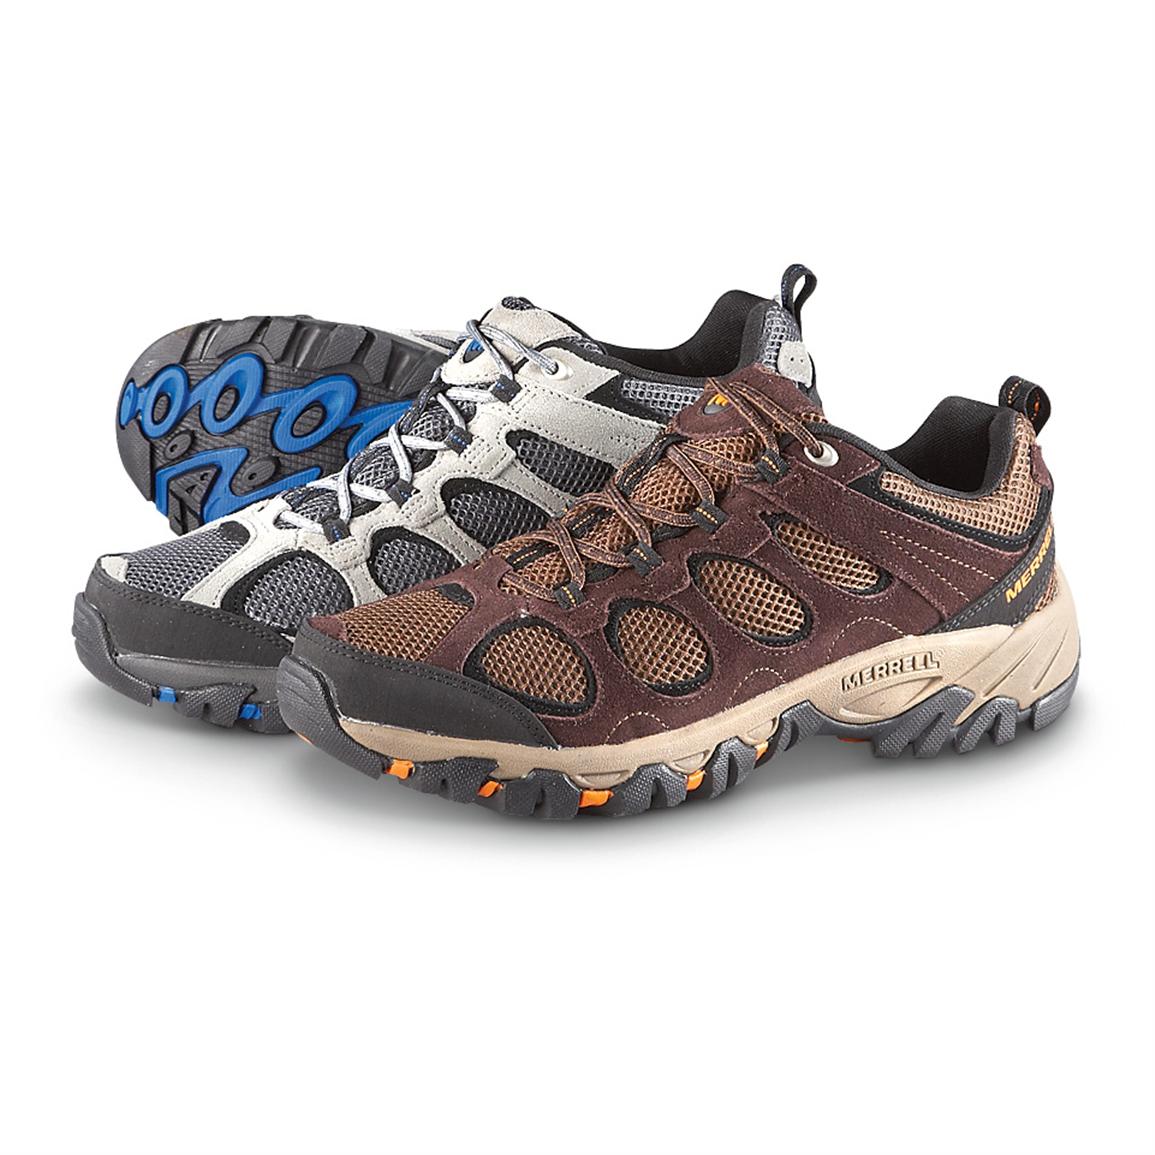 Men's Merrell Hilltop Ventilator Trail Shoes - 236602, Hiking Boots ...